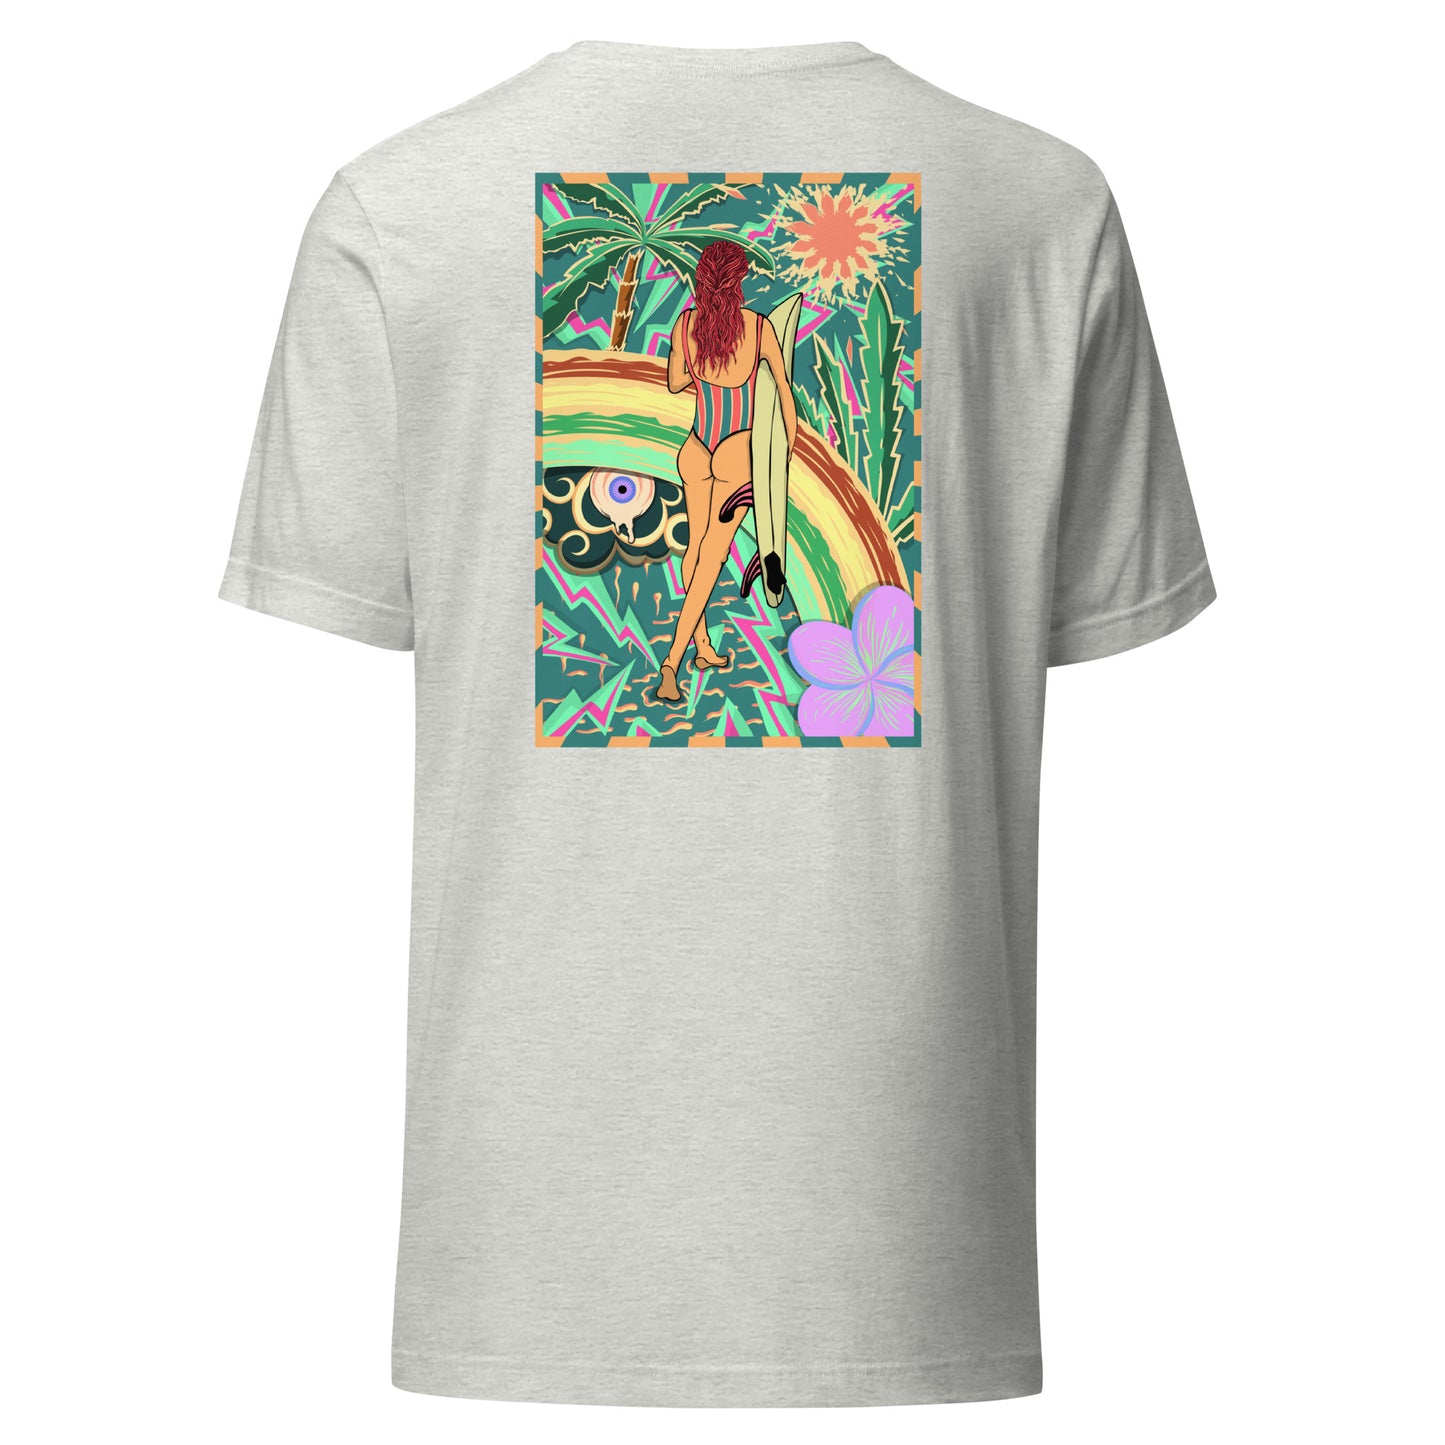 T-shirt surf vintage Walk Of Life surfeuse coloré hippie avec des palmier, fleur, arc en ciel et œil psychédélique. Tshirt dos gris